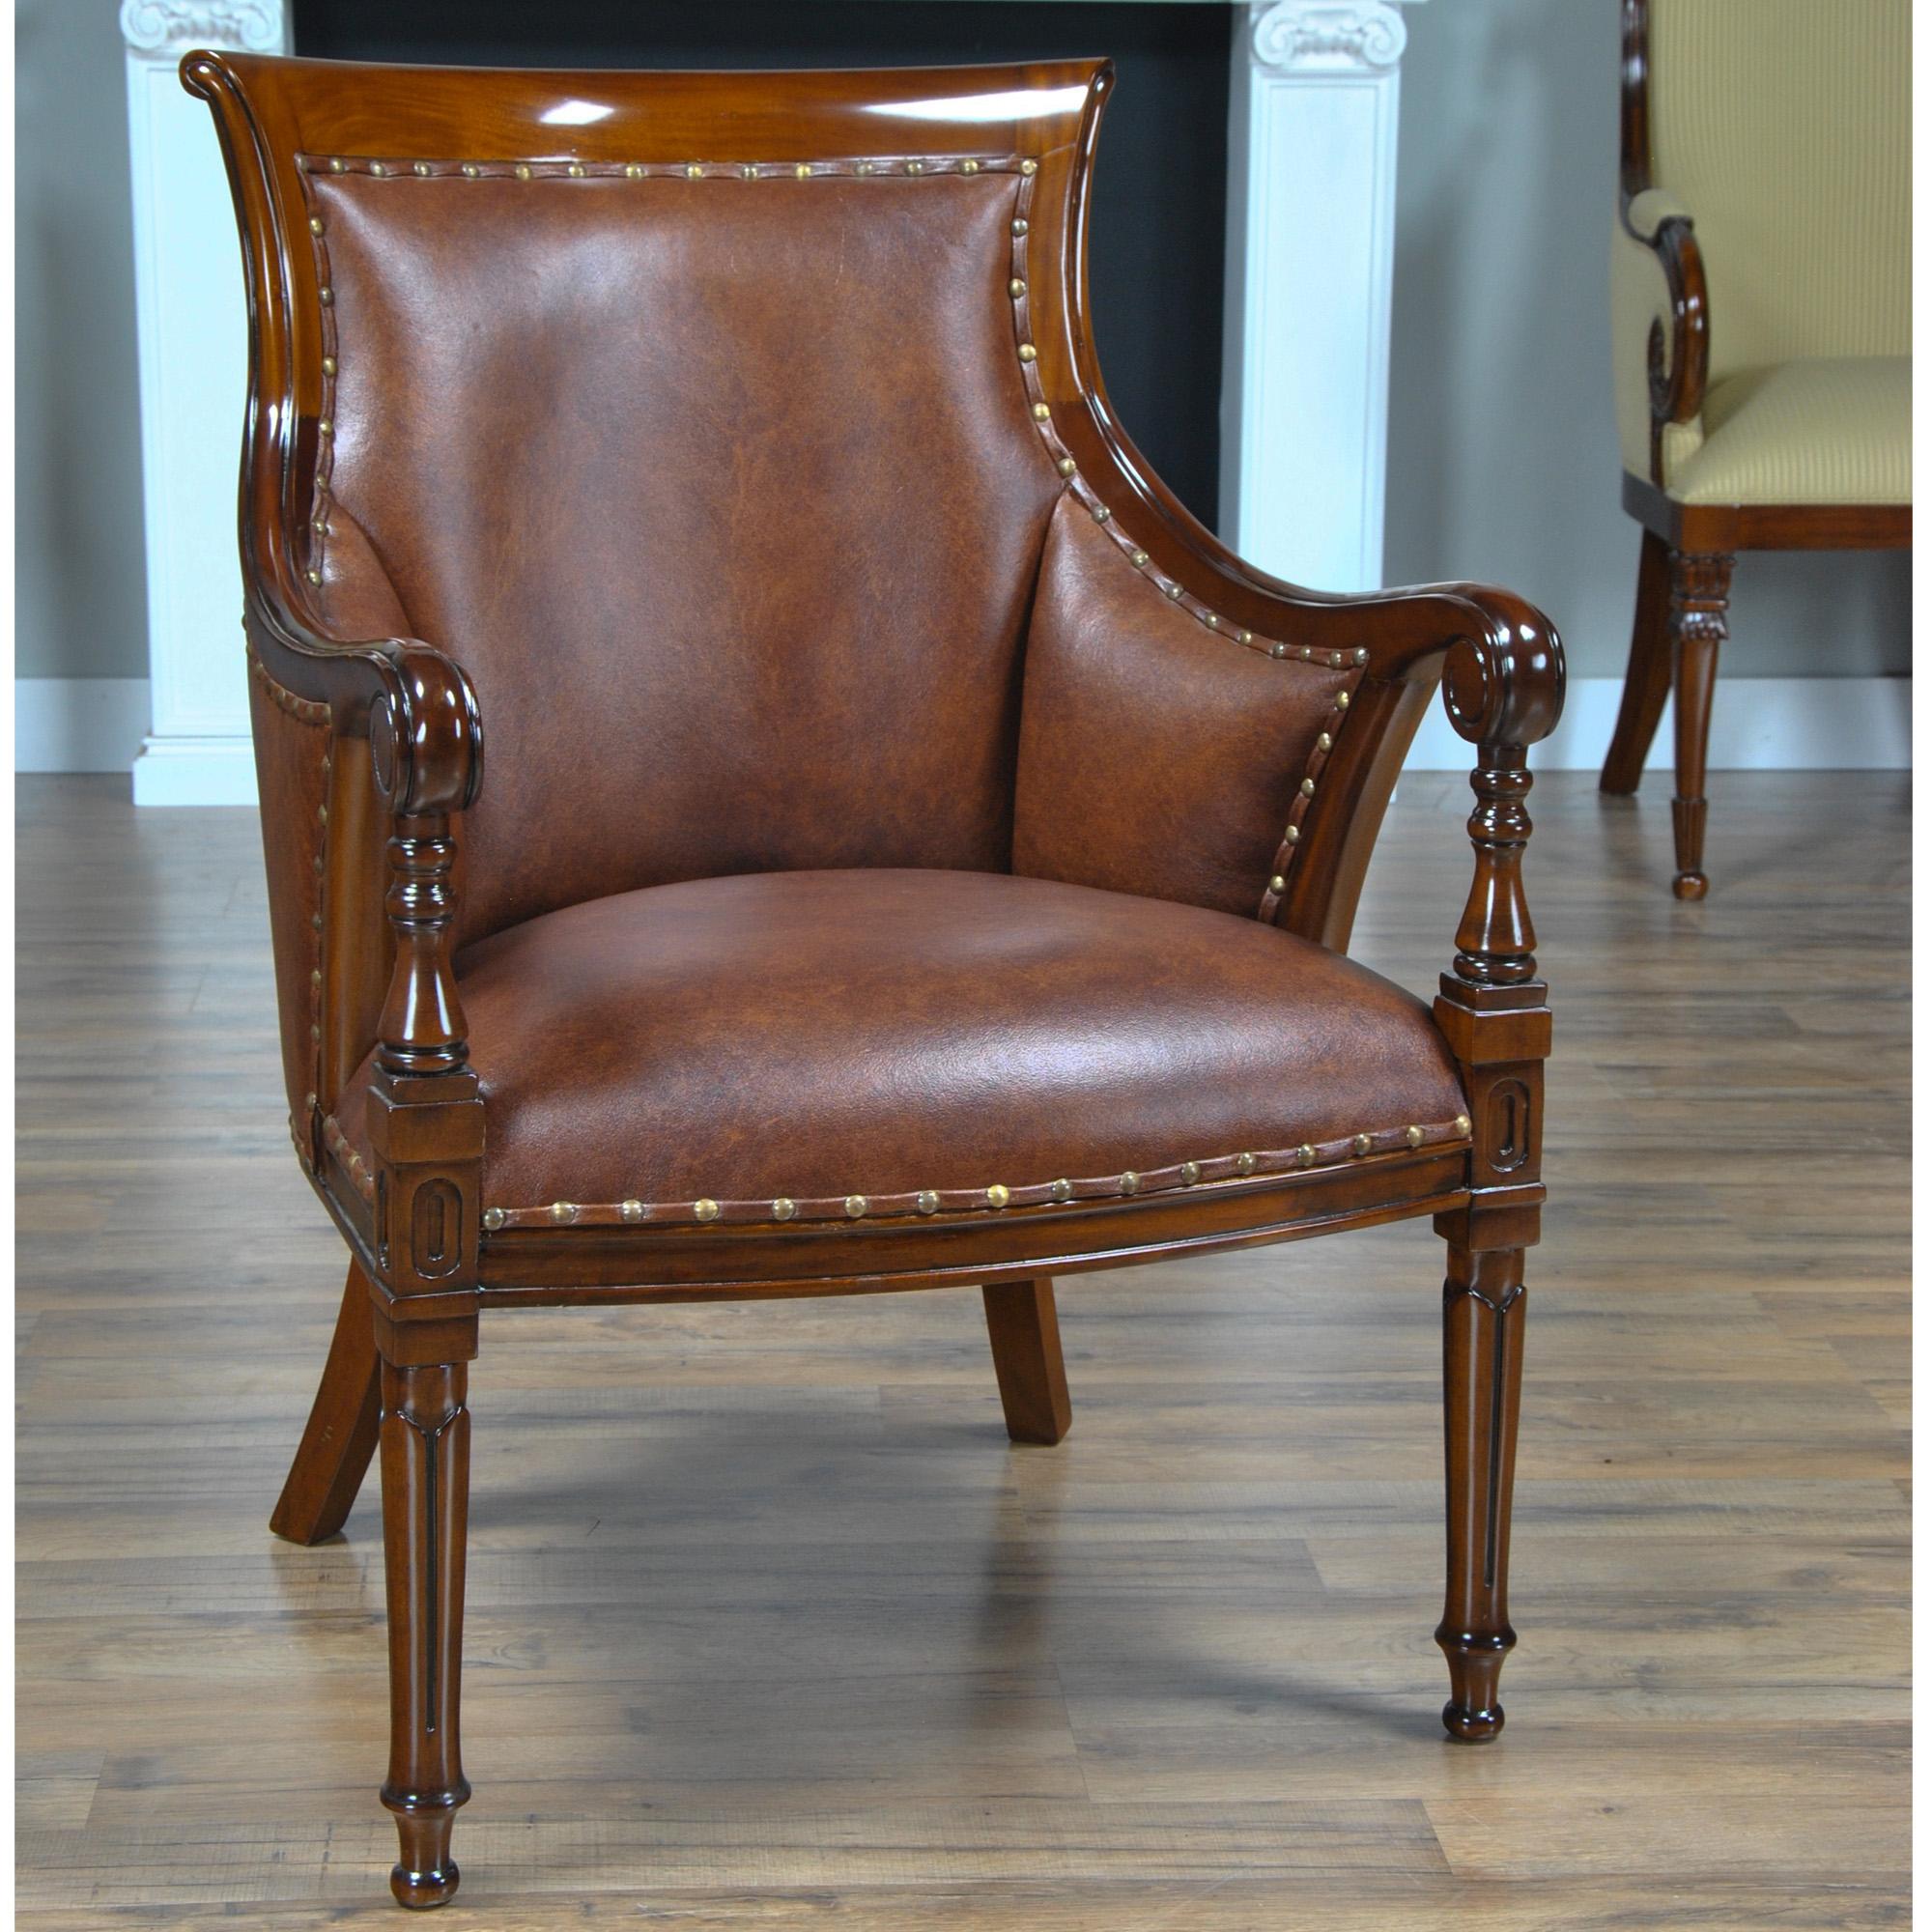 La chaise Regency en cuir de Niagara Furniture est recouverte de cuir véritable pleine fleur et agrémentée d'une garniture de clous en laiton. Cette chaise de style Regency est souvent utilisée avec la collection de bureaux de Niagara Furniture,